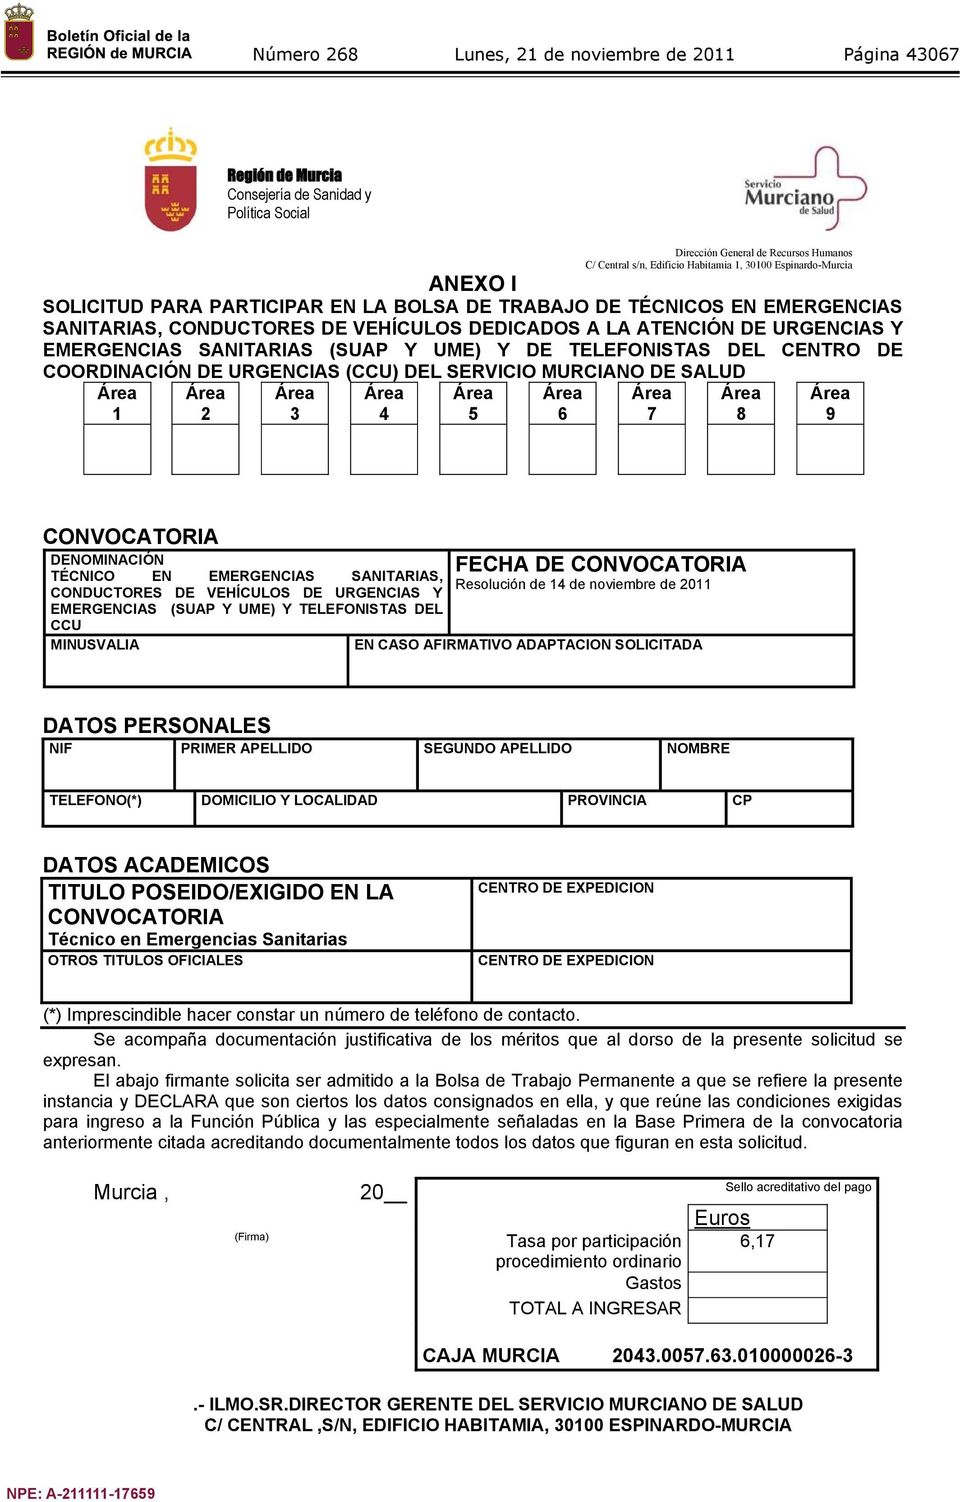 CENTRO DE COORDINACIÓN DE URGENCIAS (CCU) DEL SERVICIO MURCIANO DE SALUD 1 2 3 4 5 6 7 8 9 CONVOCATORIA DENOMINACIÓN TÉCNICO EN EMERGENCIAS SANITARIAS, CONDUCTORES DE VEHÍCULOS DE URGENCIAS Y